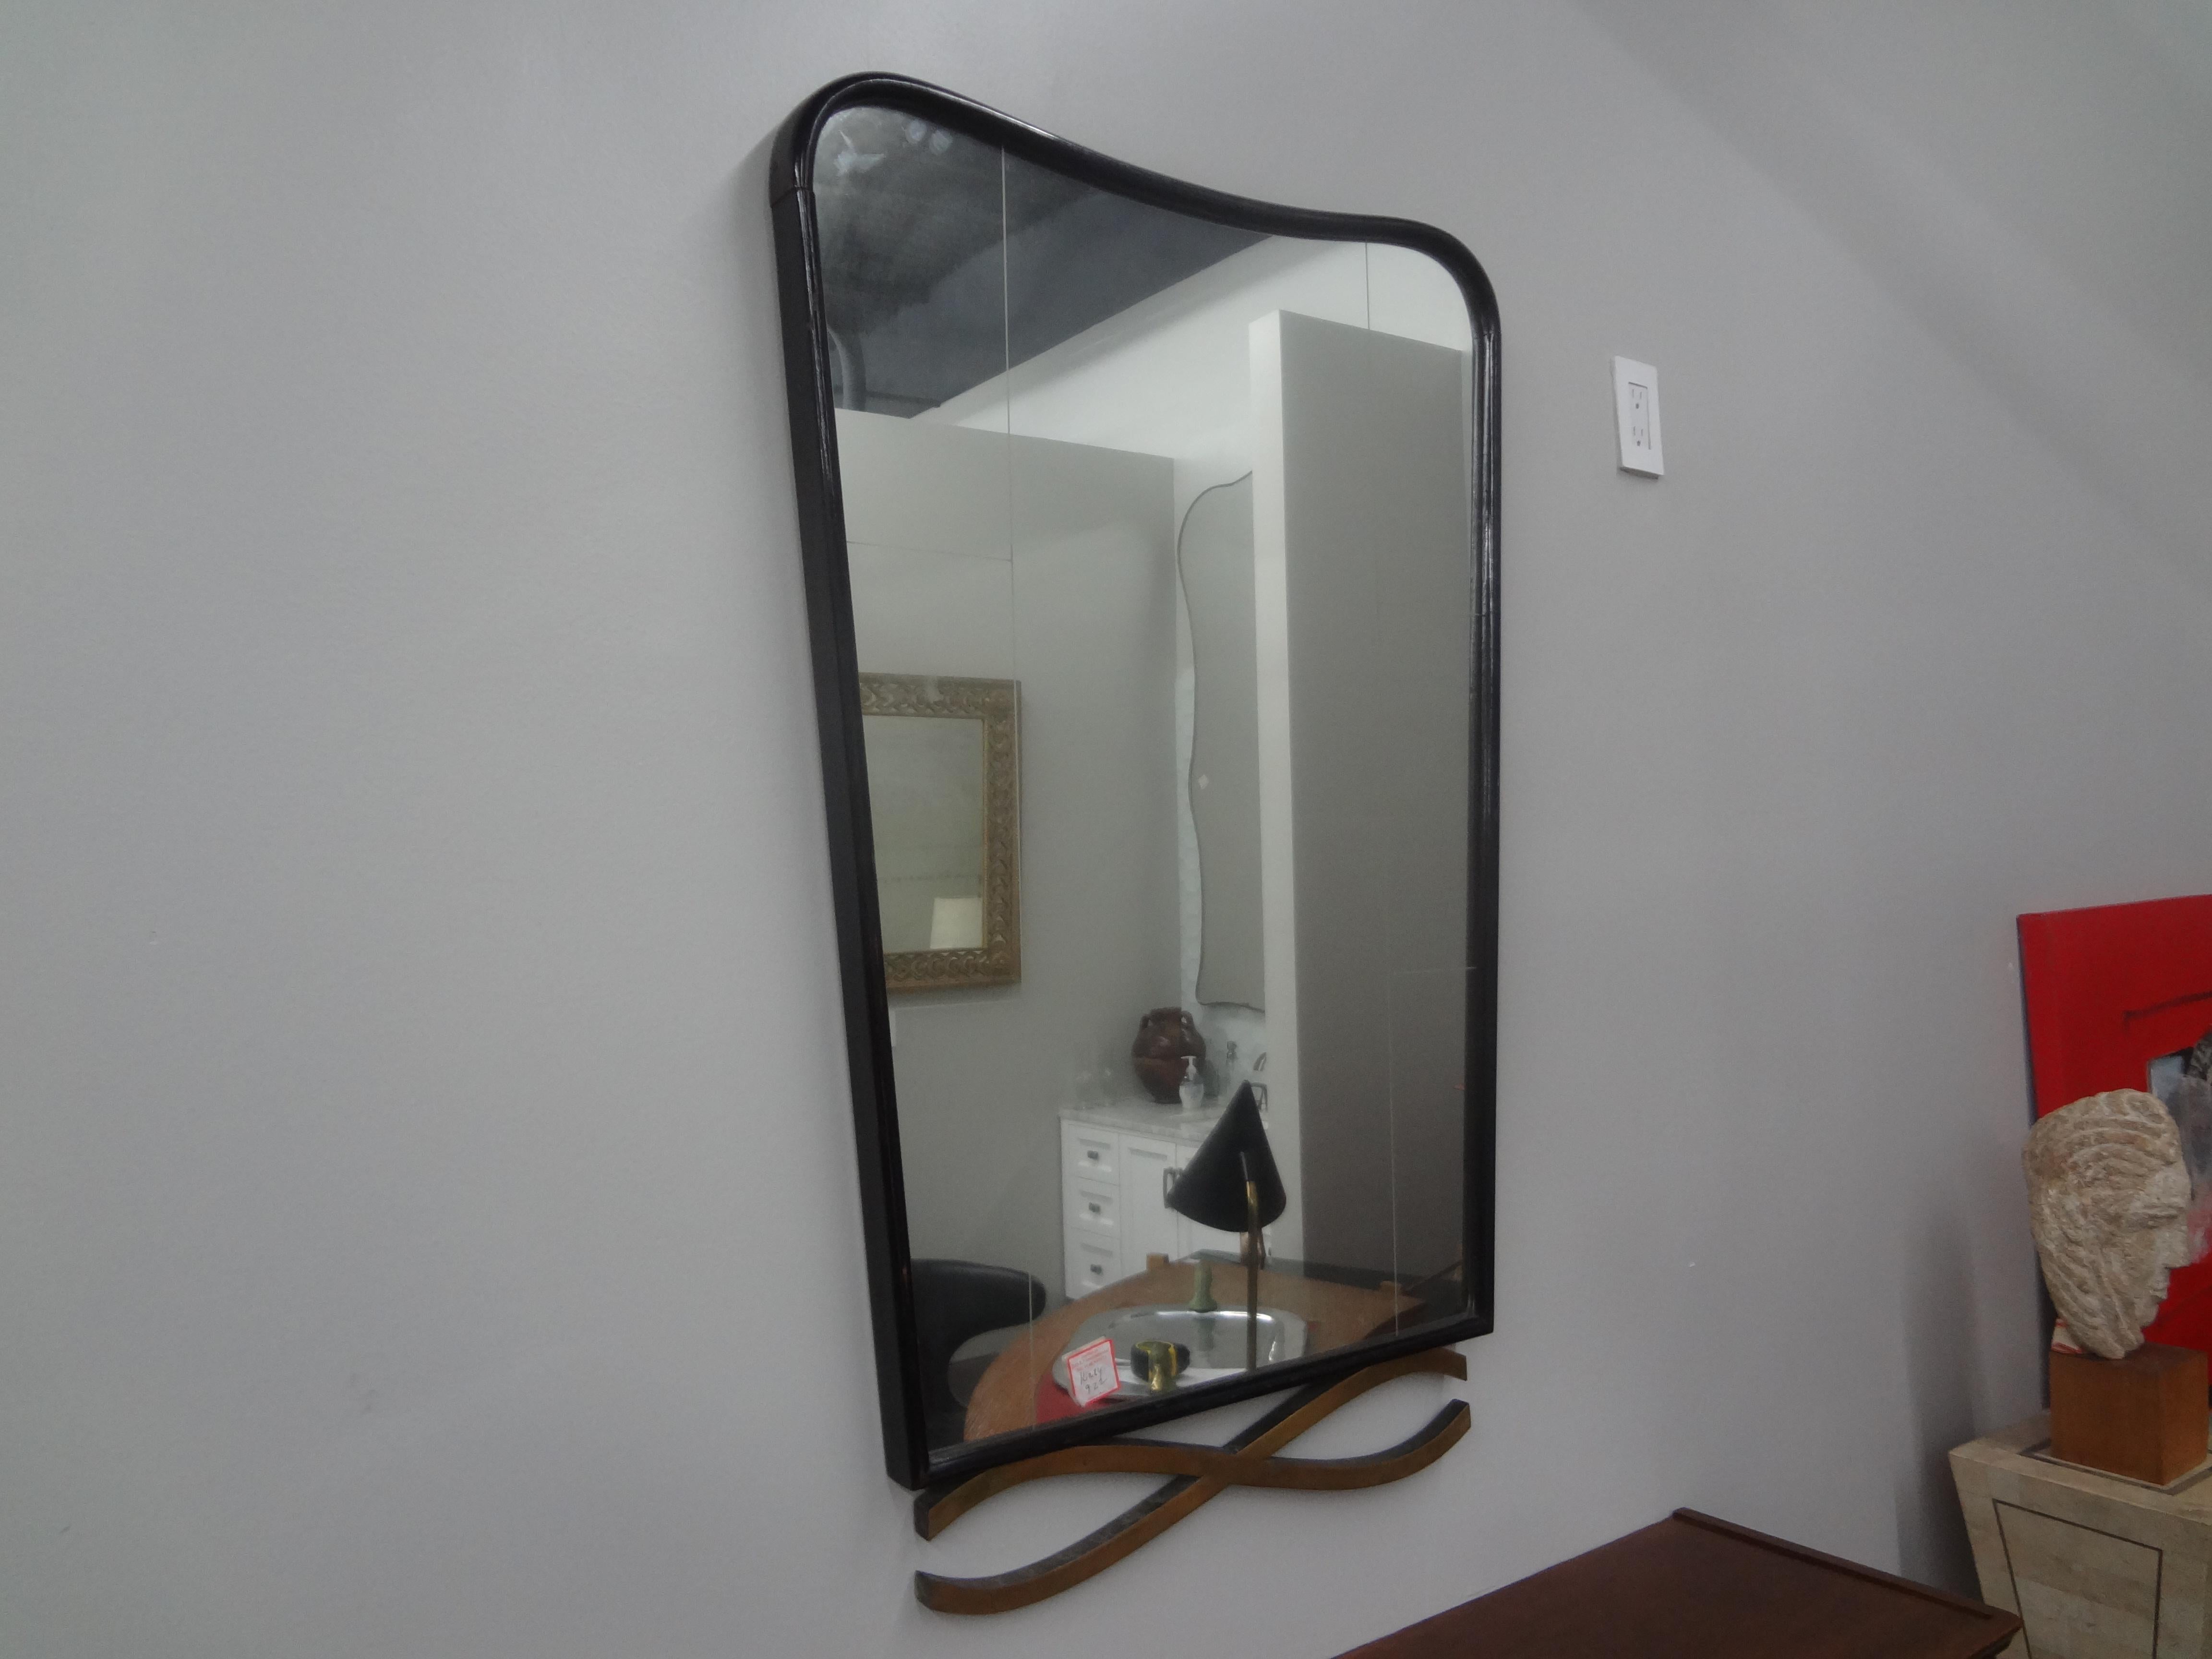 Moderner italienischer Spiegel, der Ico Parisi zugeschrieben wird.
Dieser formschöne italienische Mid-Century Modern-Spiegel ist aus Nussbaumholz gefertigt und hat ein ungewöhnliches, übertriebenes x-förmiges Bronzedesign an der Unterseite.
Der